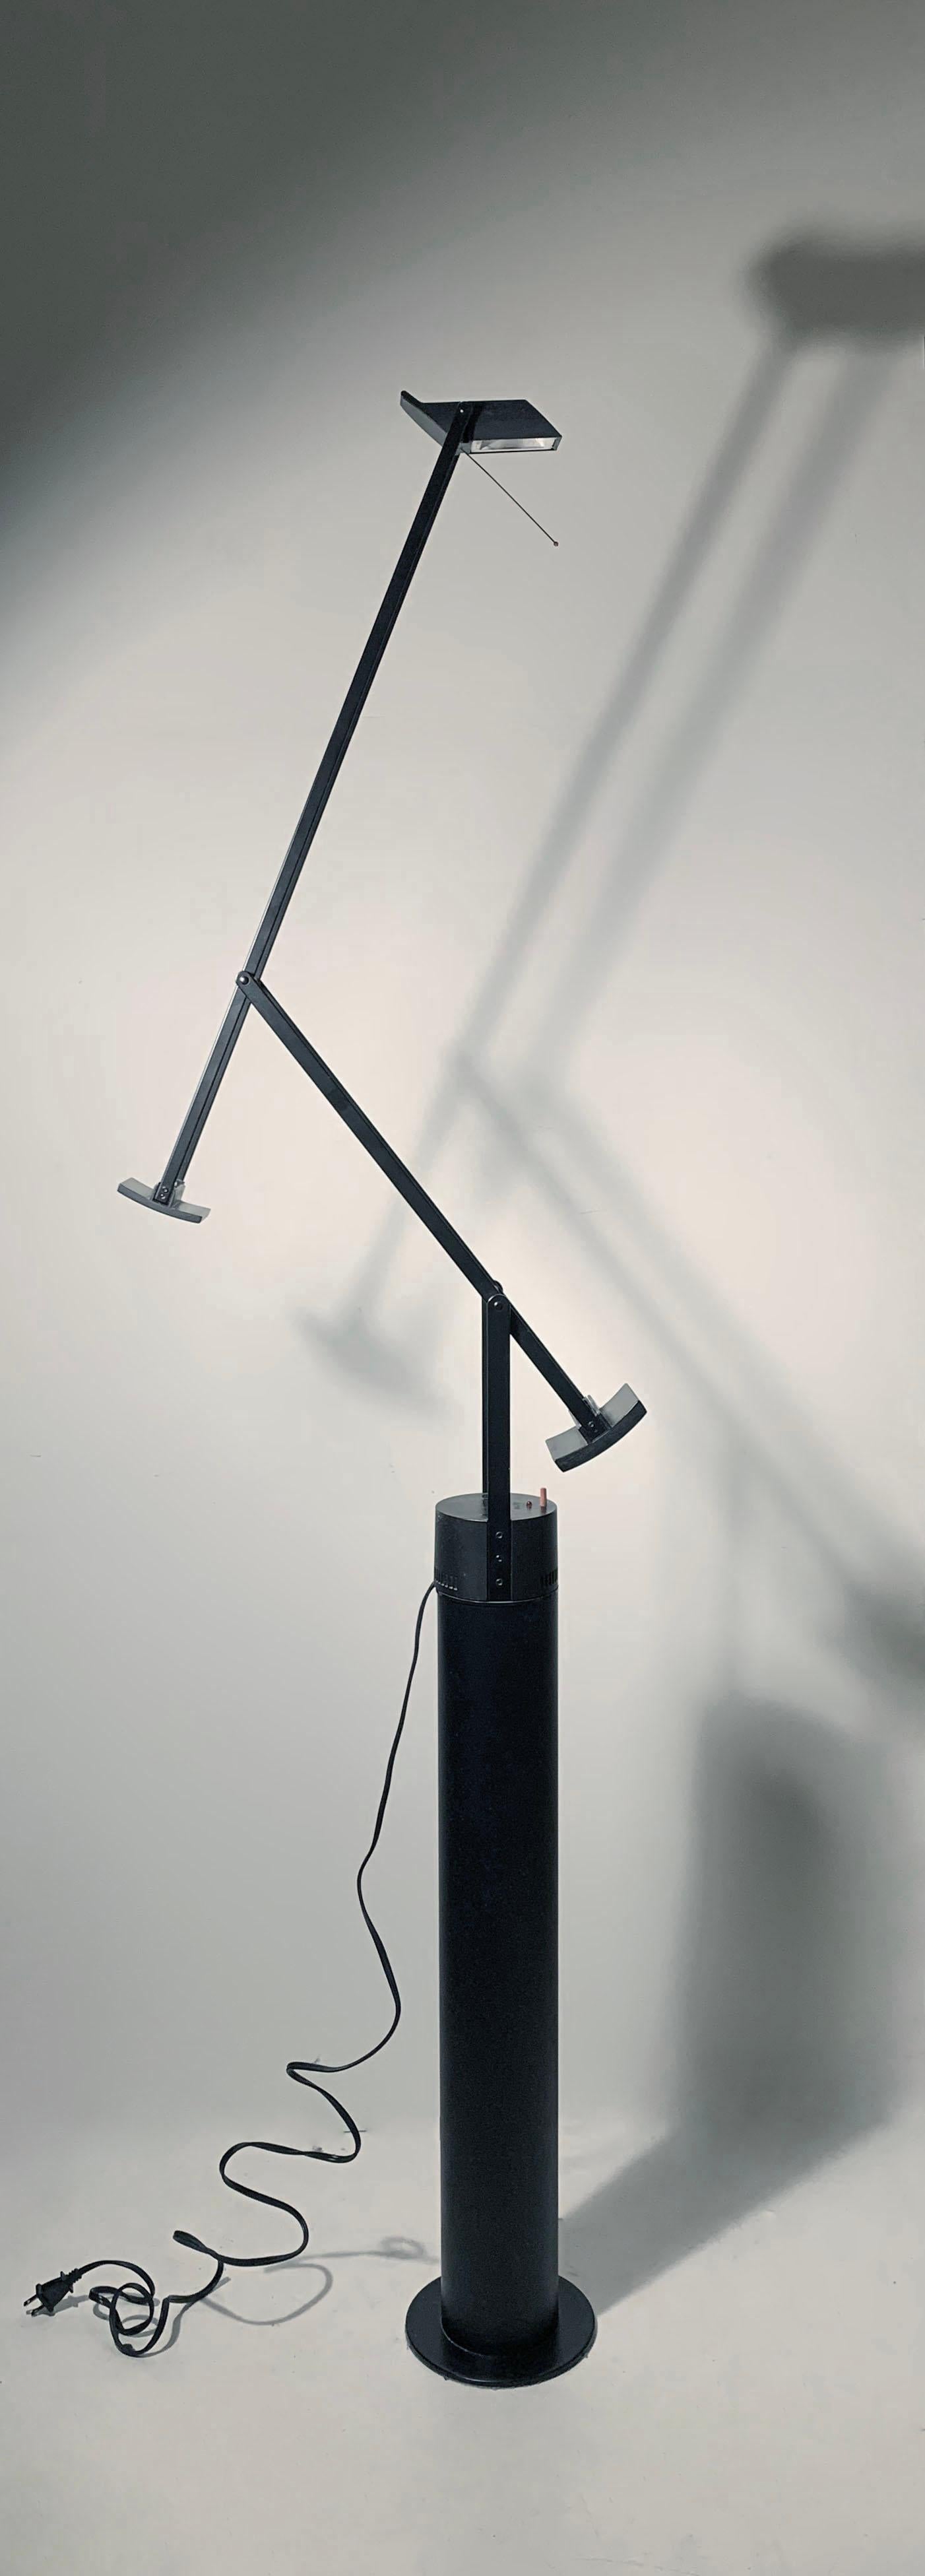 La lampe Tizio Plus avec support de sol a été conçue par Richard Sapper pour Artemide. Le modèle de table Tizio Plus monté sur un support de sol cylindrique en acier.

Il s'agit d'une version vintage originale.